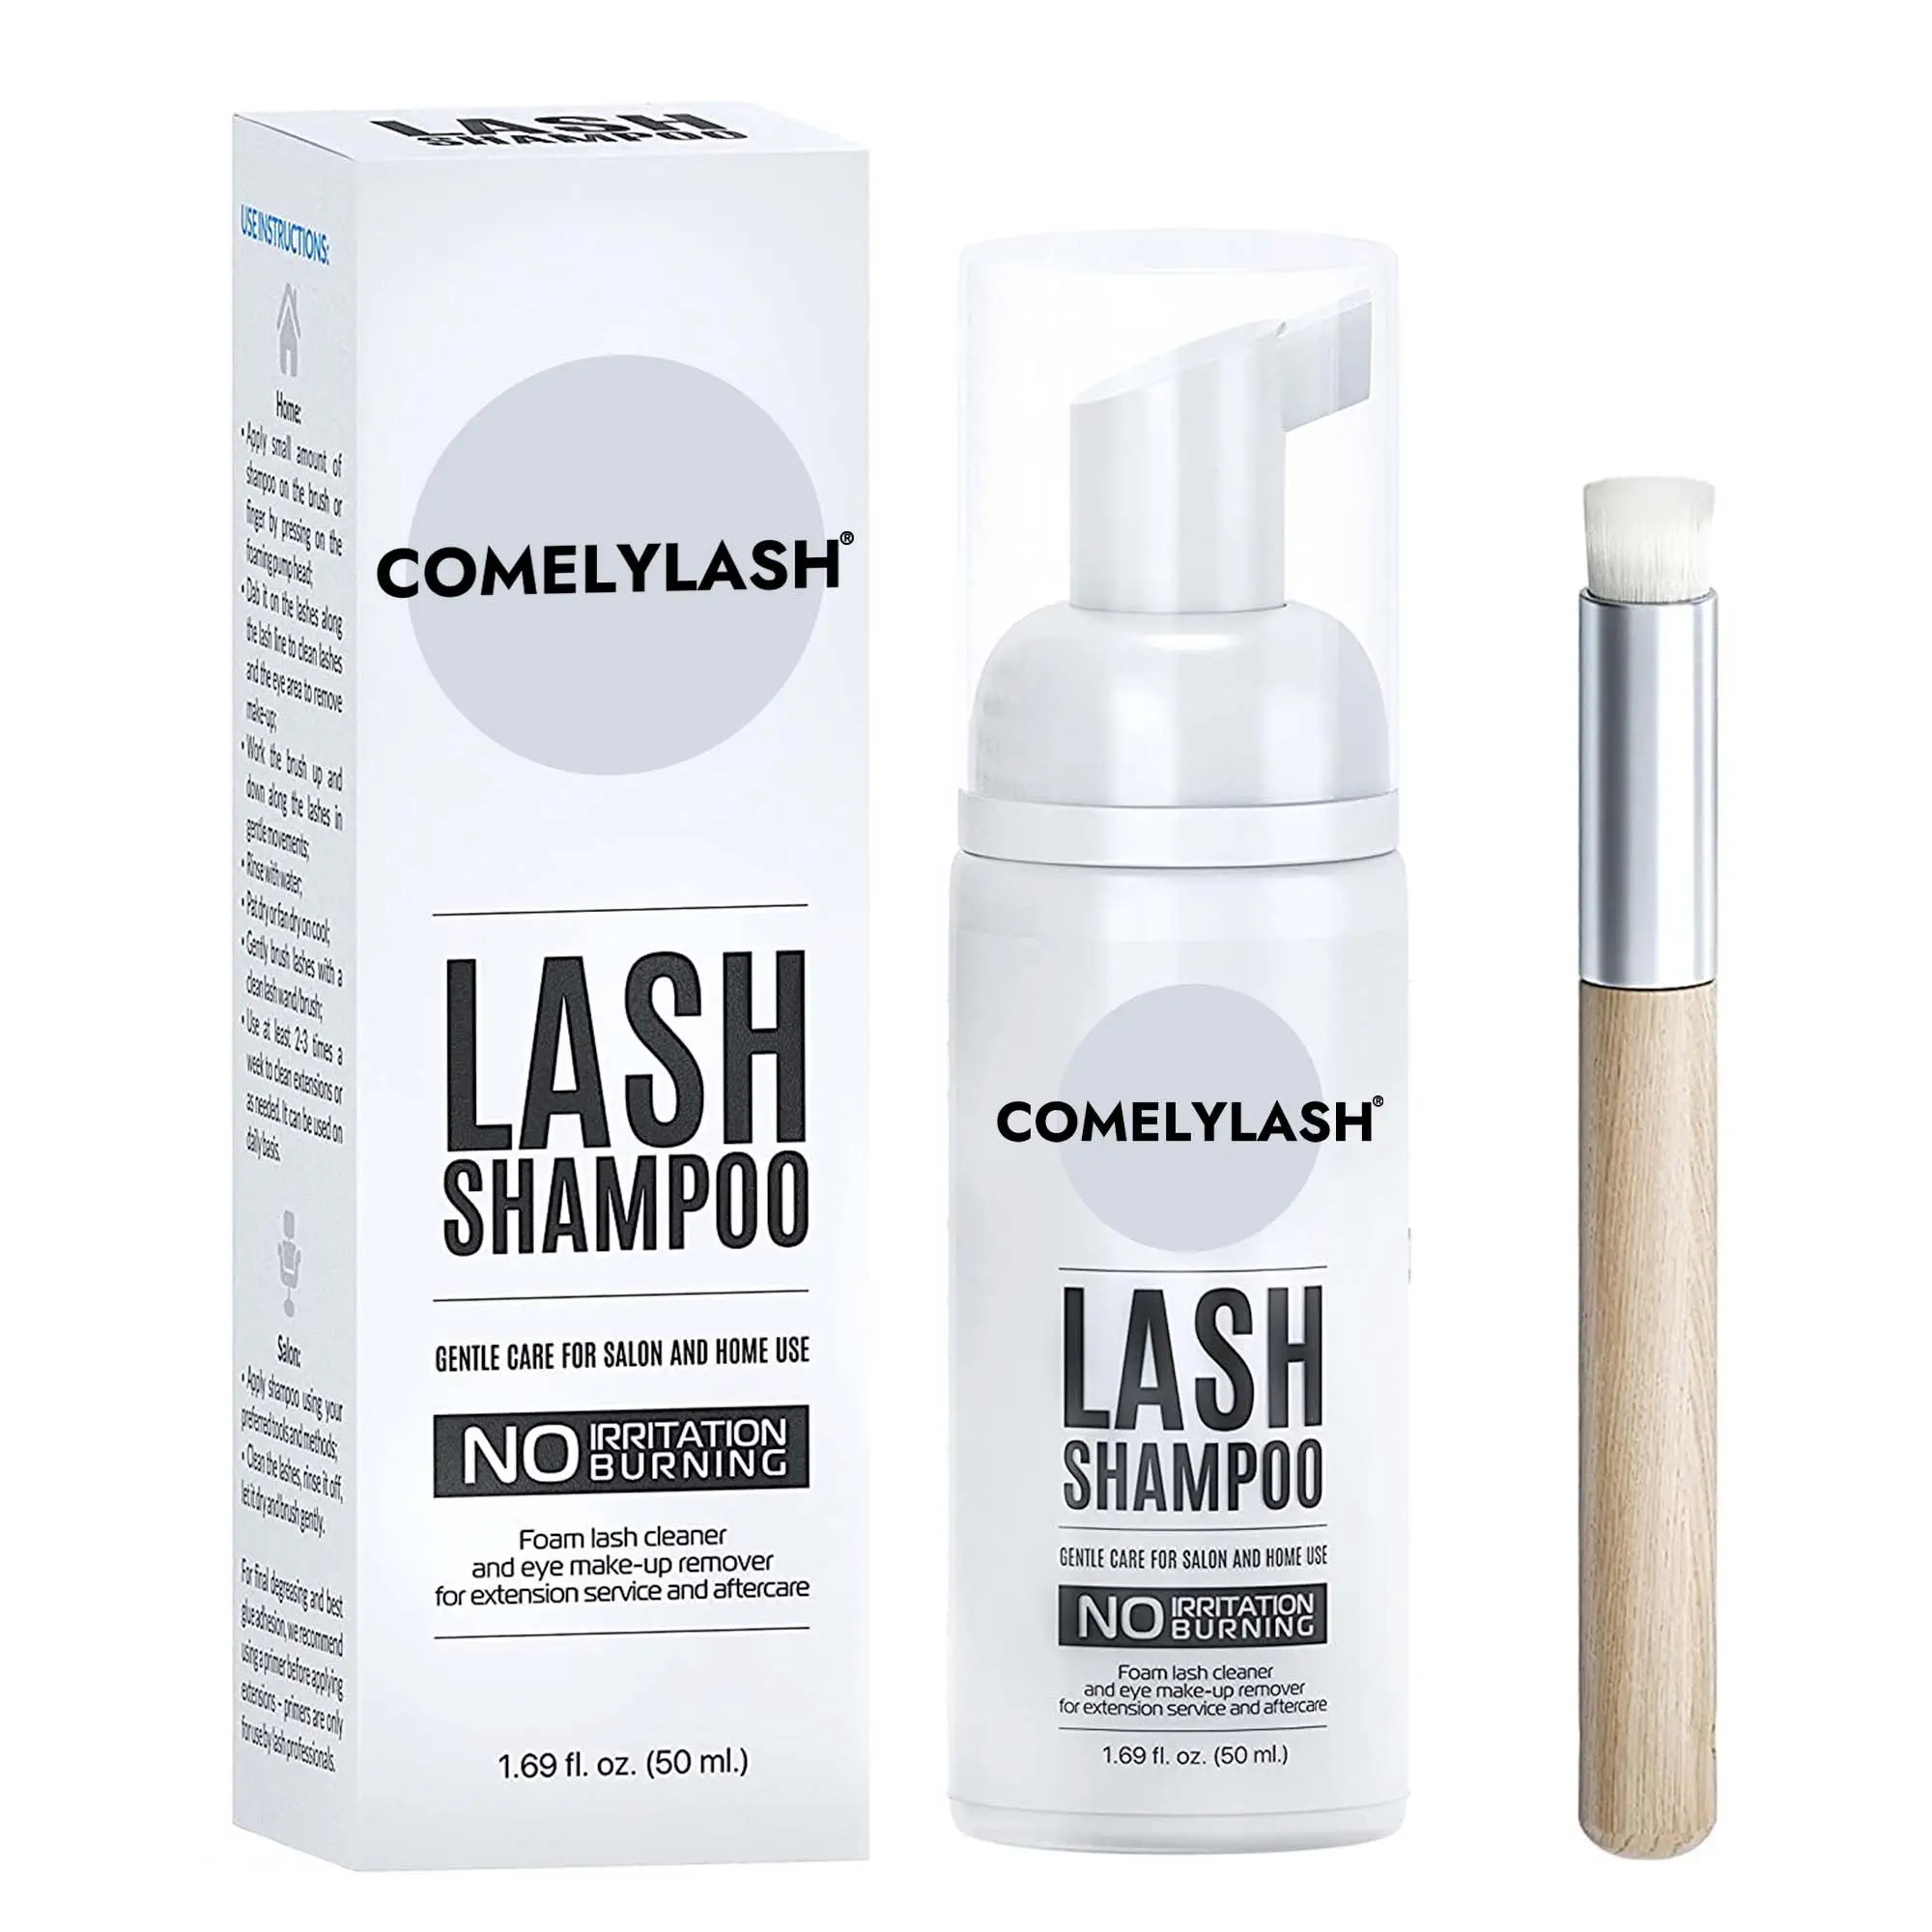 Comelylash пользовательская торговая марка шампунь для ресниц пена для сжимания шампуня бутылка для очистки ресниц шампунь